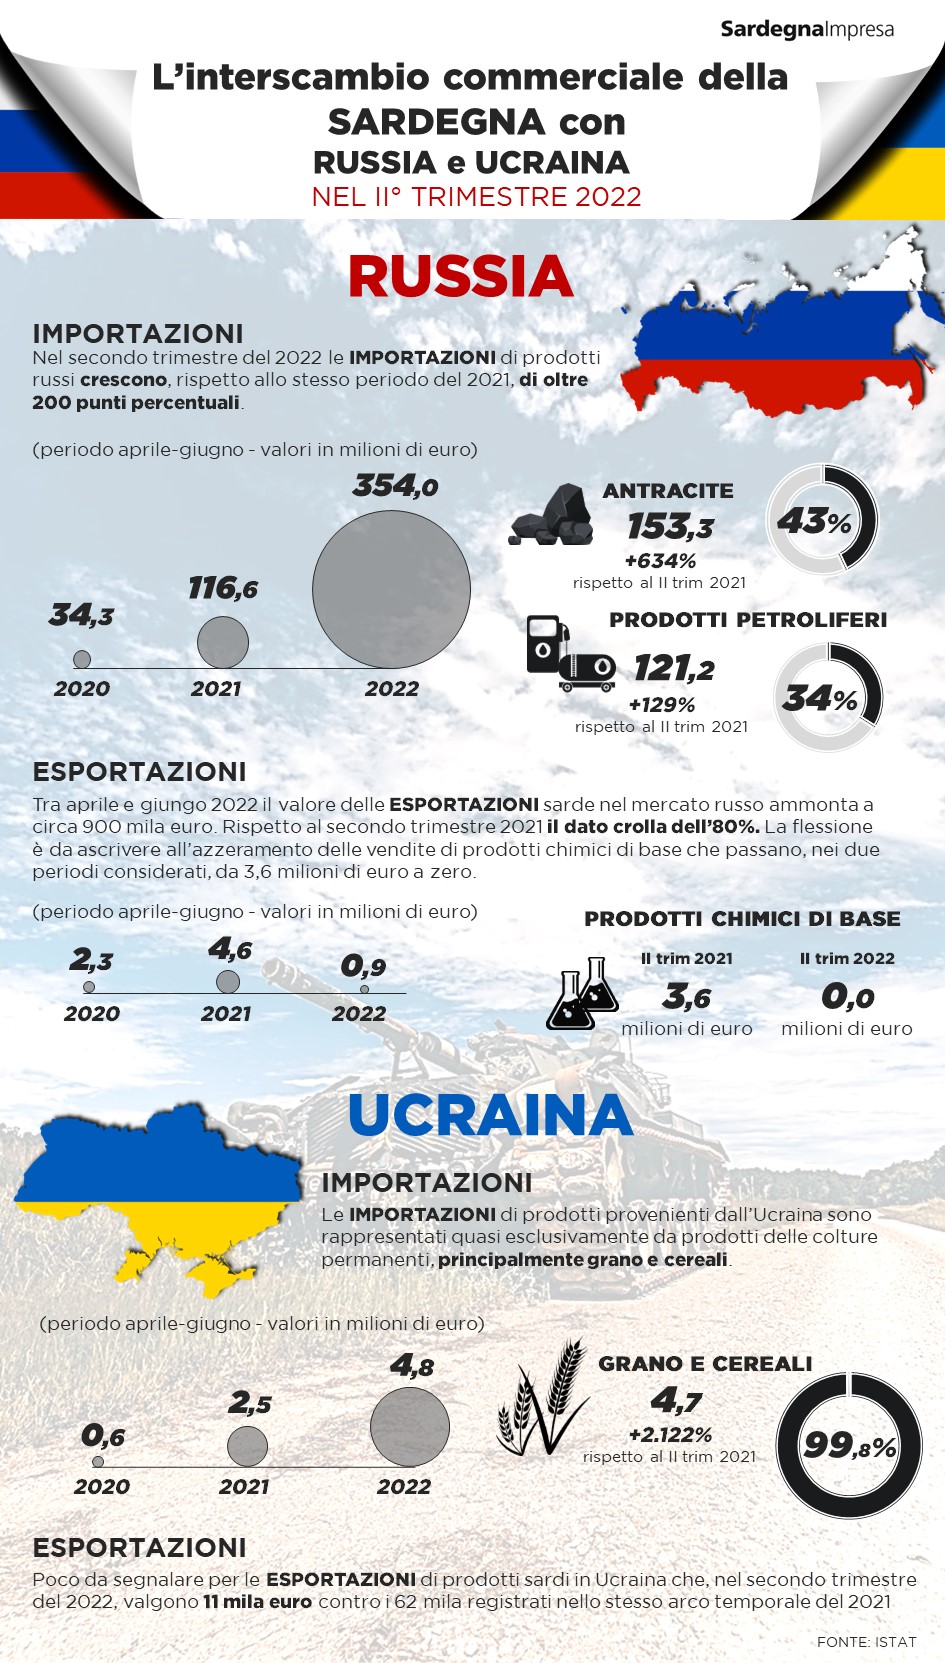 Interscambio commerciale Sardegna-Russia-Ucraina